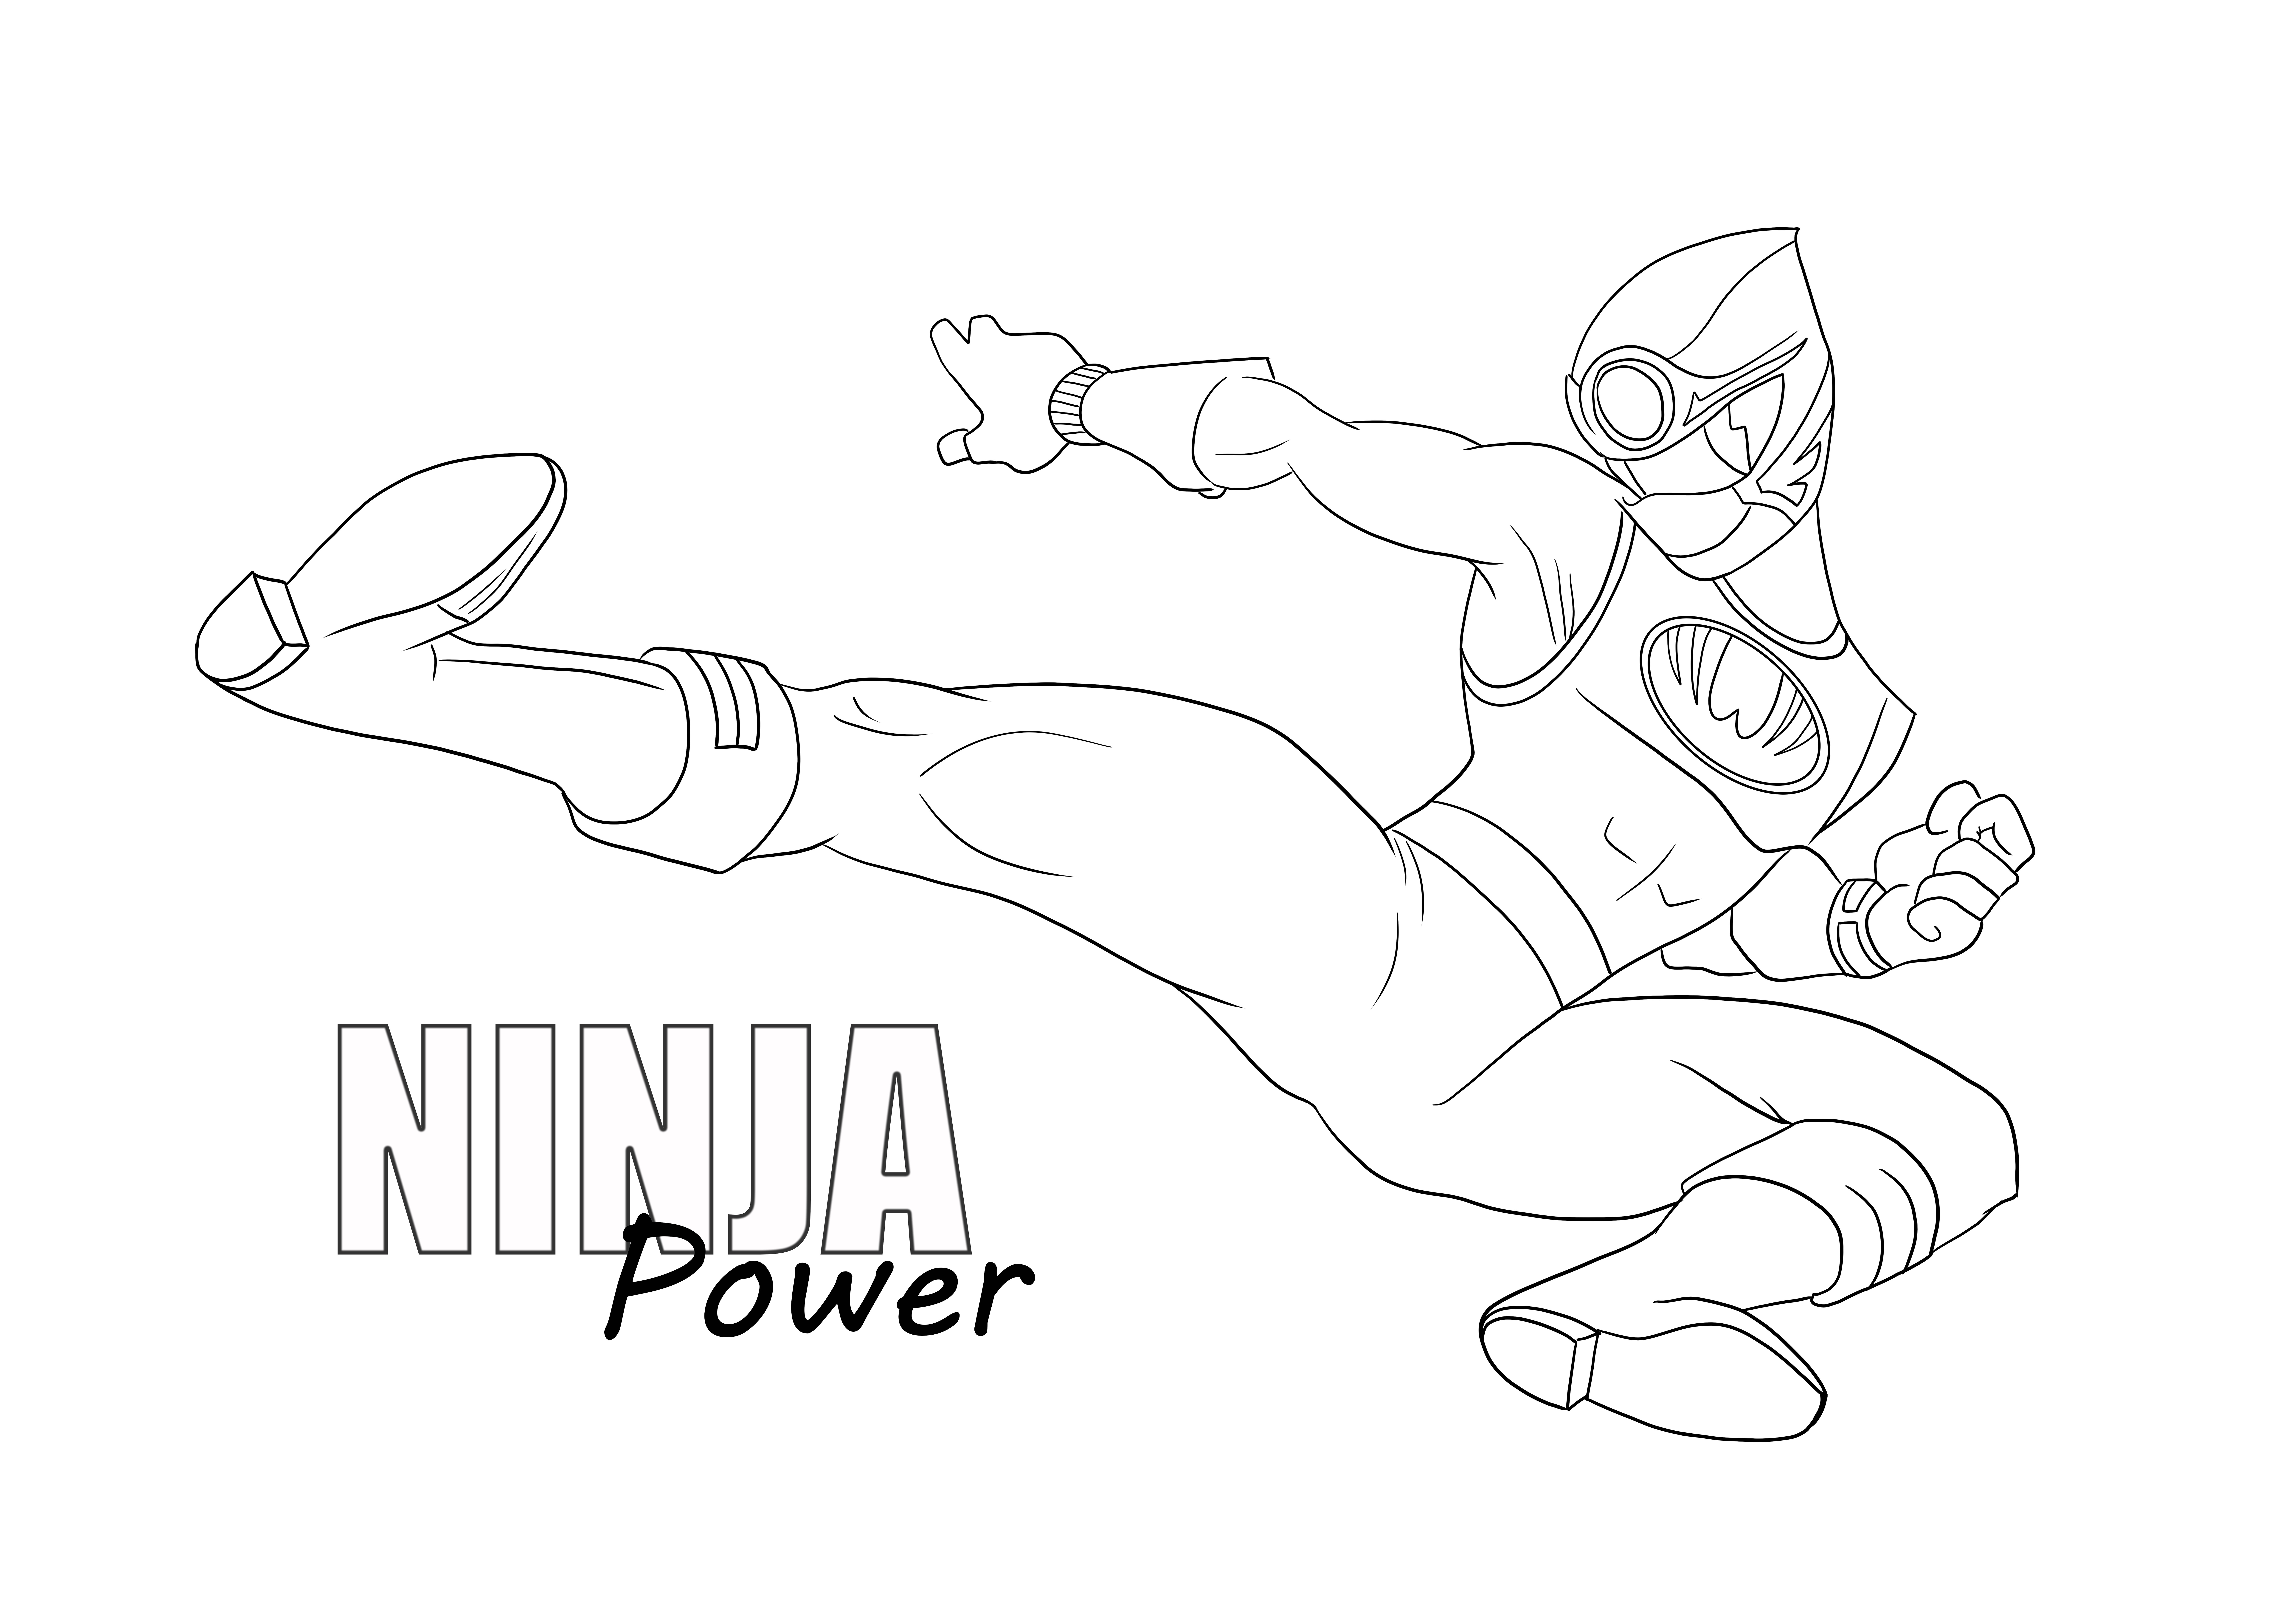 Ninja Power zum kostenlosen Ausmalen und Drucken für Kinder jeden Alters